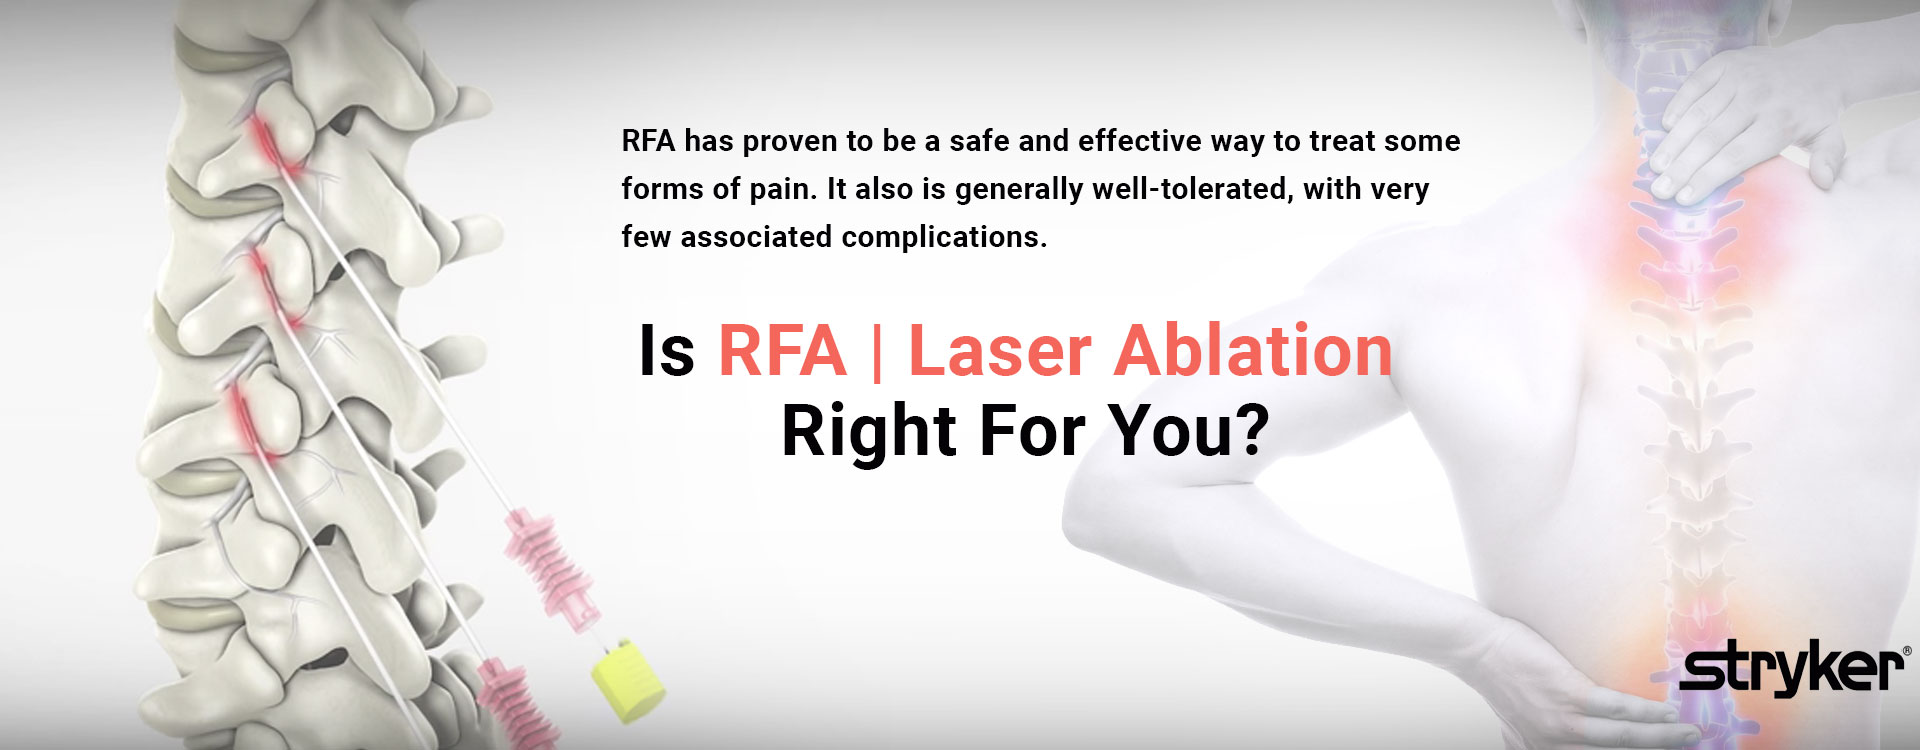 RFA Laser Ablation Slider Image